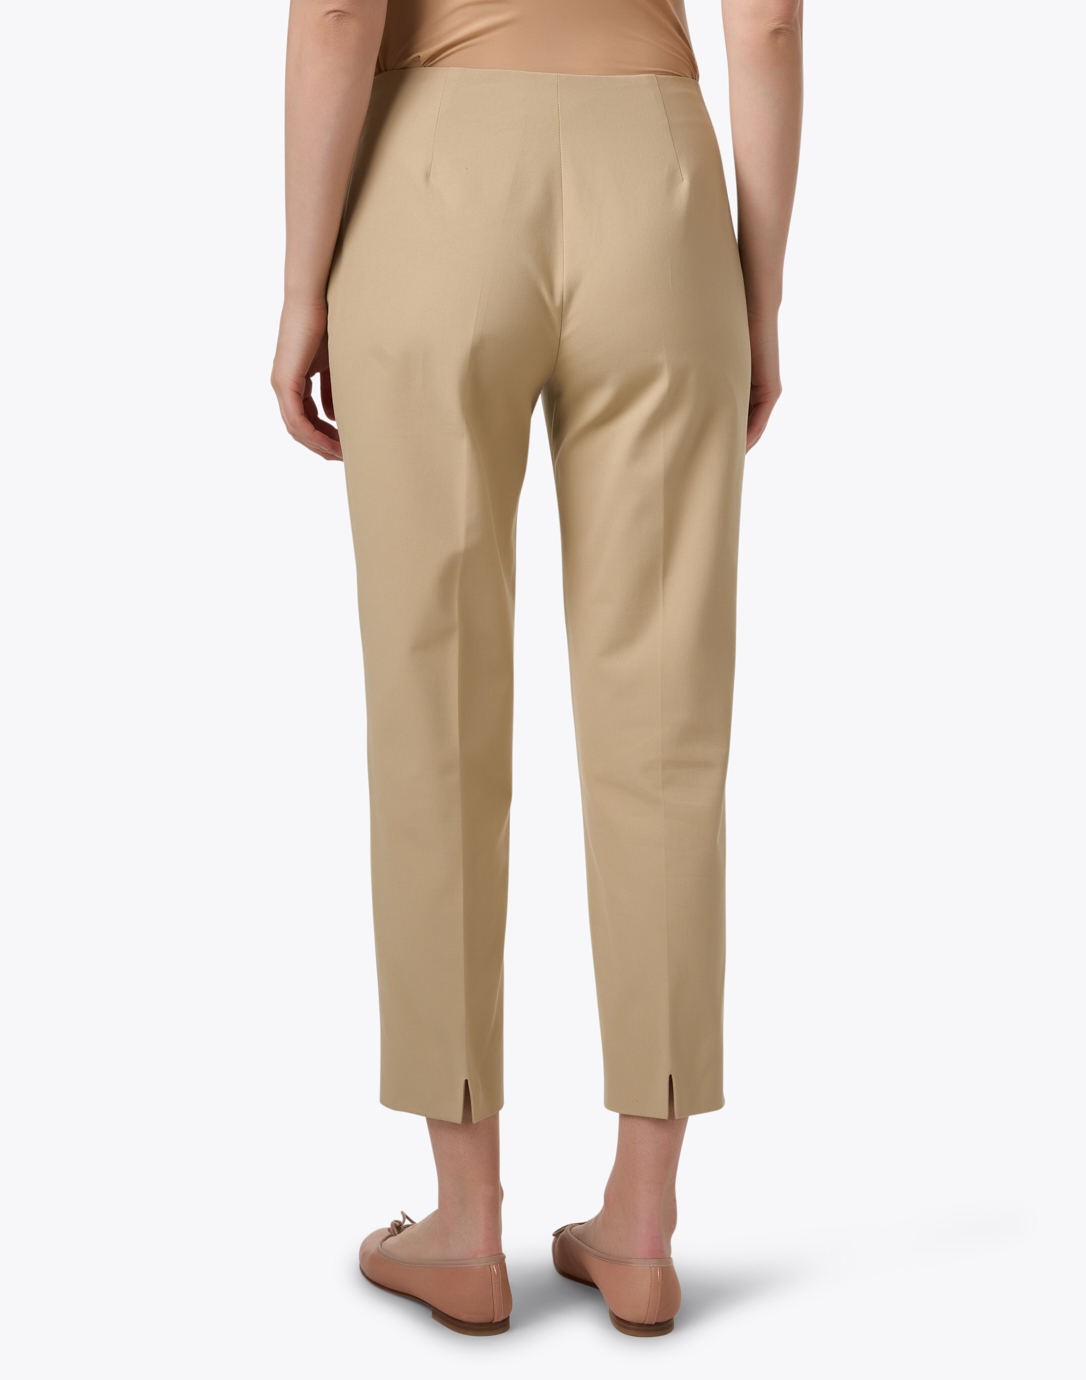 Rafaella Women's Capri Pants Size 6 – SoTex Thrift Store